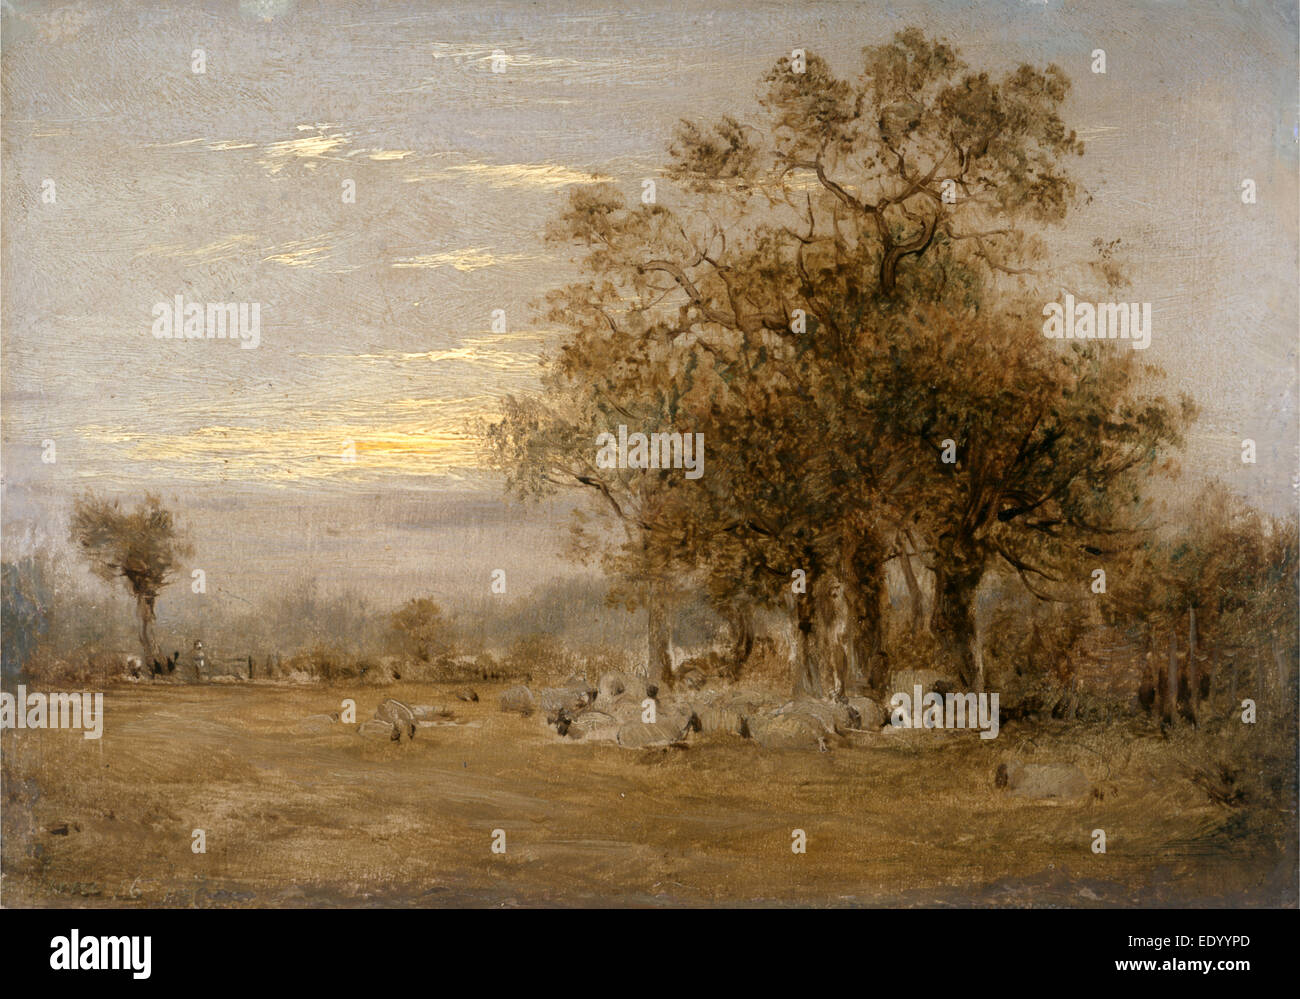 Pecore al pascolo datato in vernice gialla, in basso a sinistra: " Giugno 16 18 [...]', John Linnell, 1792-1882, inglese britannico Foto Stock